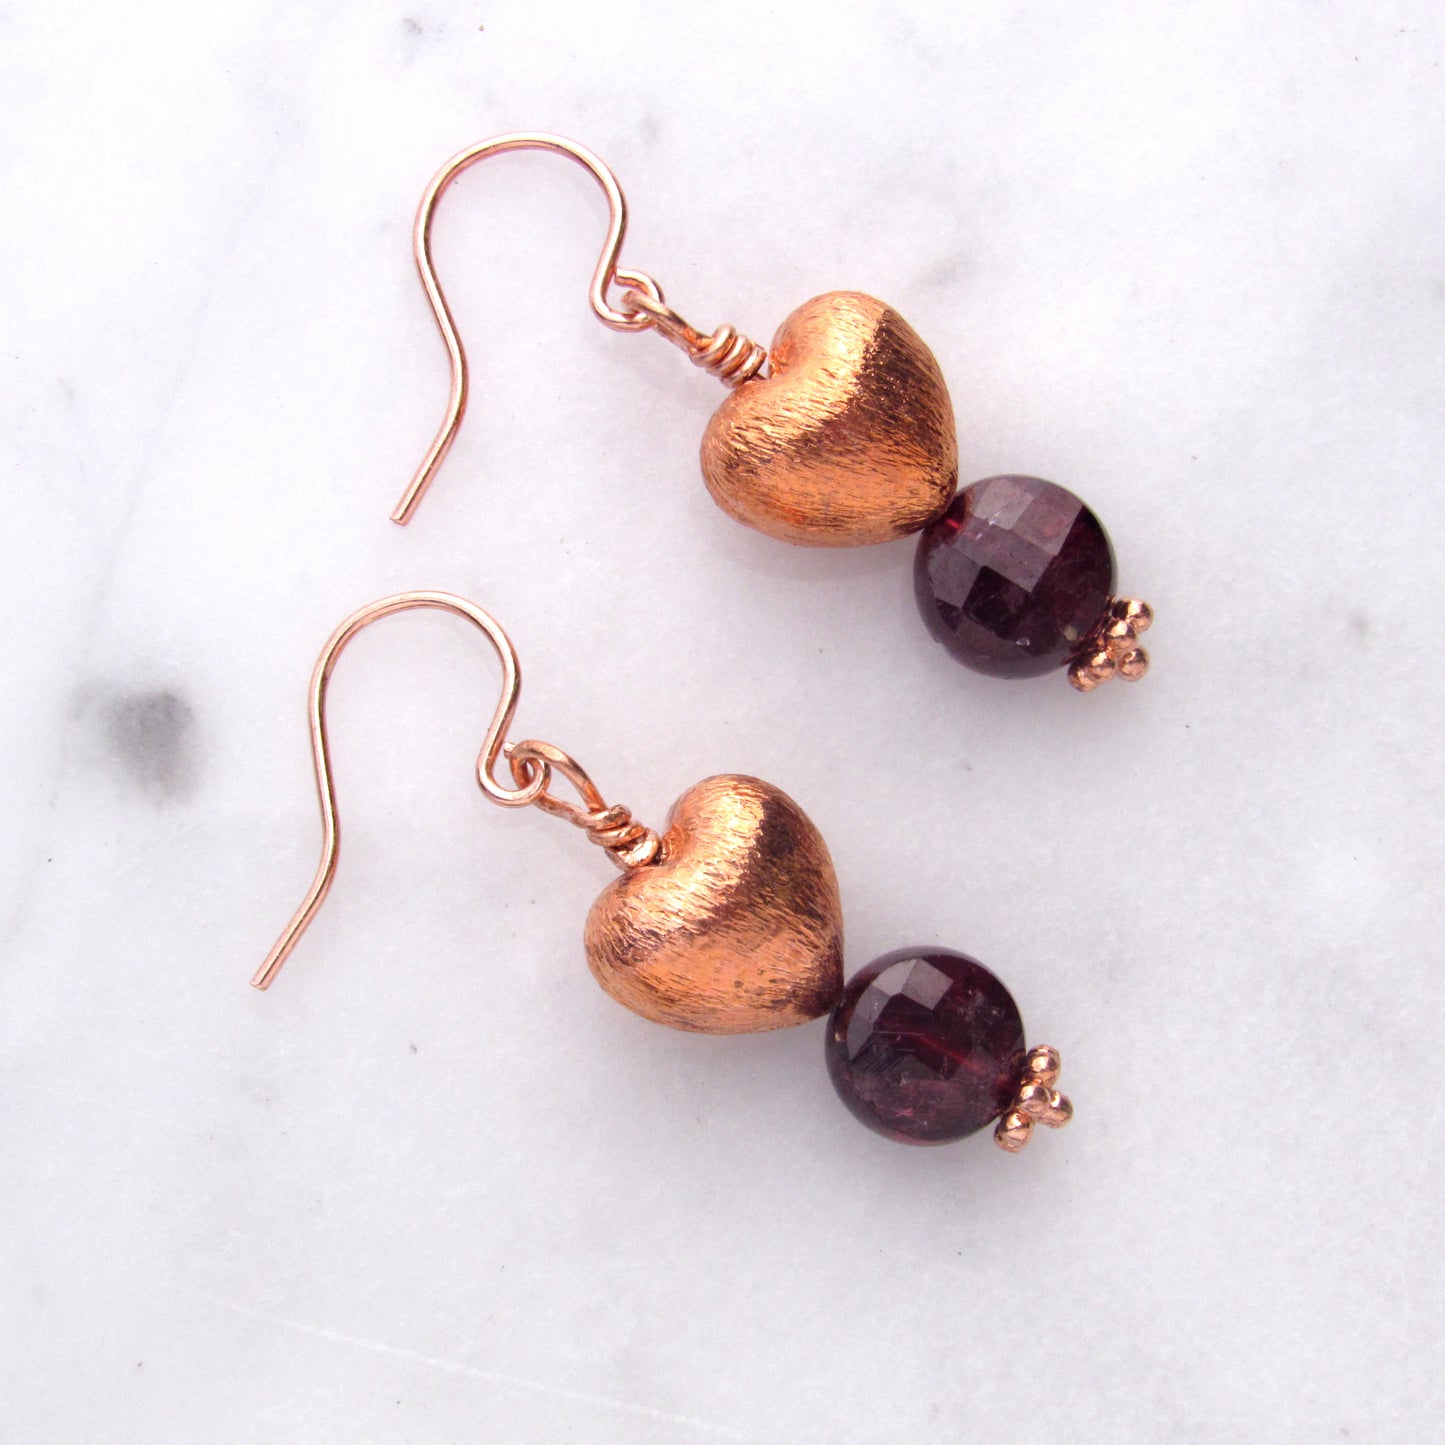 Copper Hearts with Garnet gemstone earrings